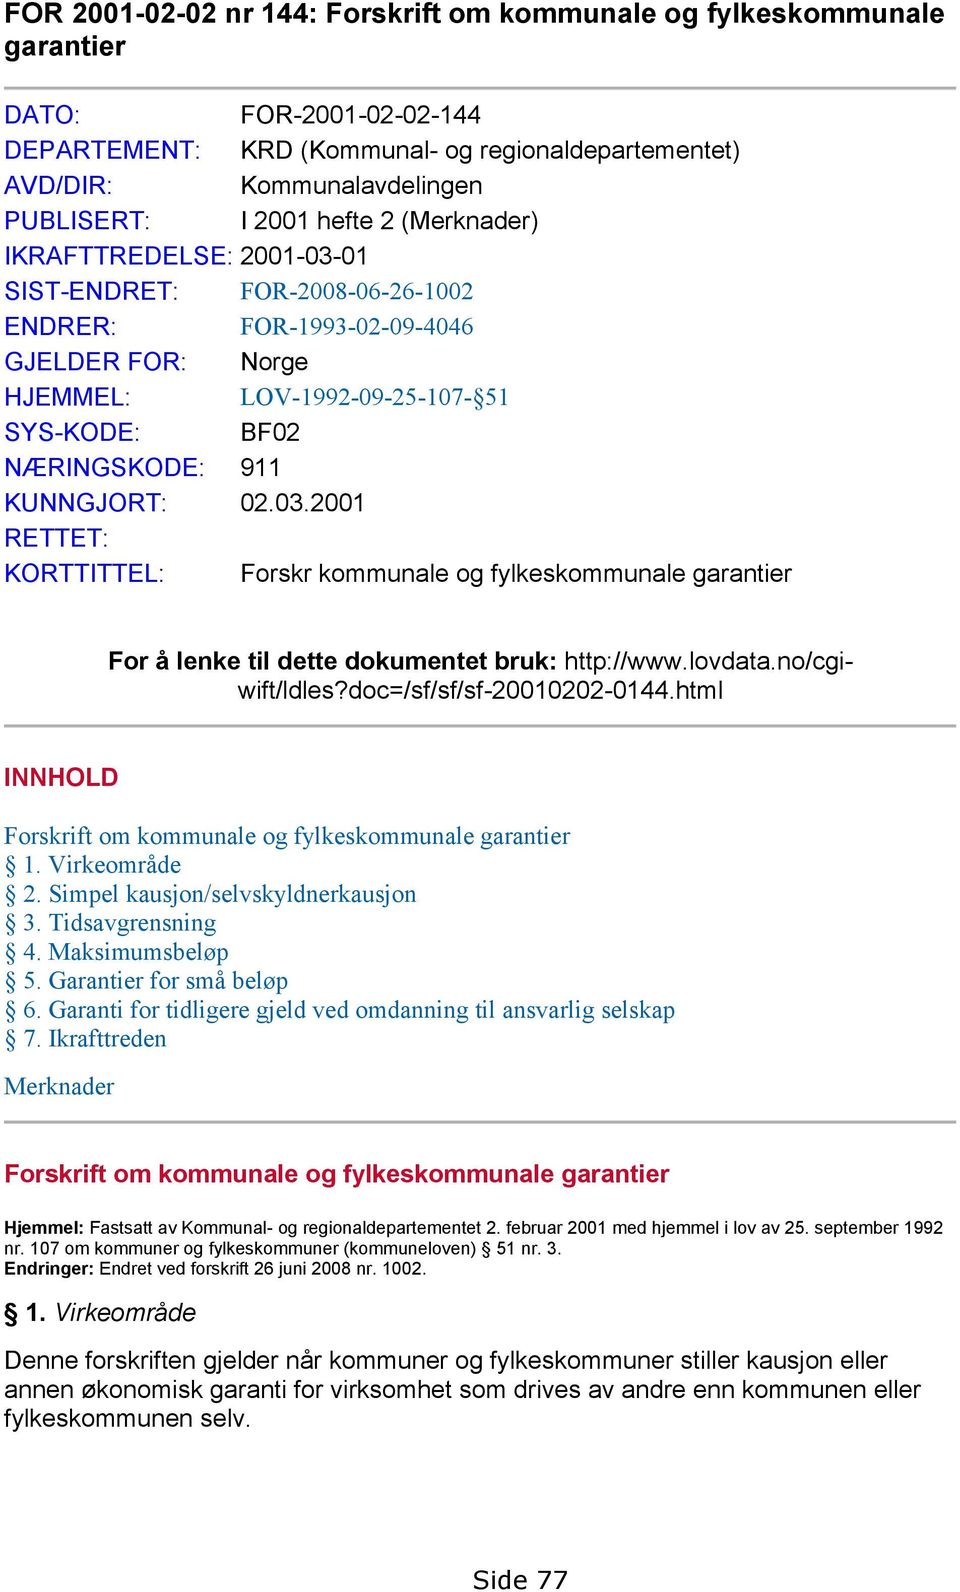 KUNNGJORT: 02.03.2001 RETTET: KORTTITTEL: Forskr kommunale og fylkeskommunale garantier For å lenke til dette dokumentet bruk: http://www.lovdata.no/cgiwift/ldles?doc=/sf/sf/sf-20010202-0144.